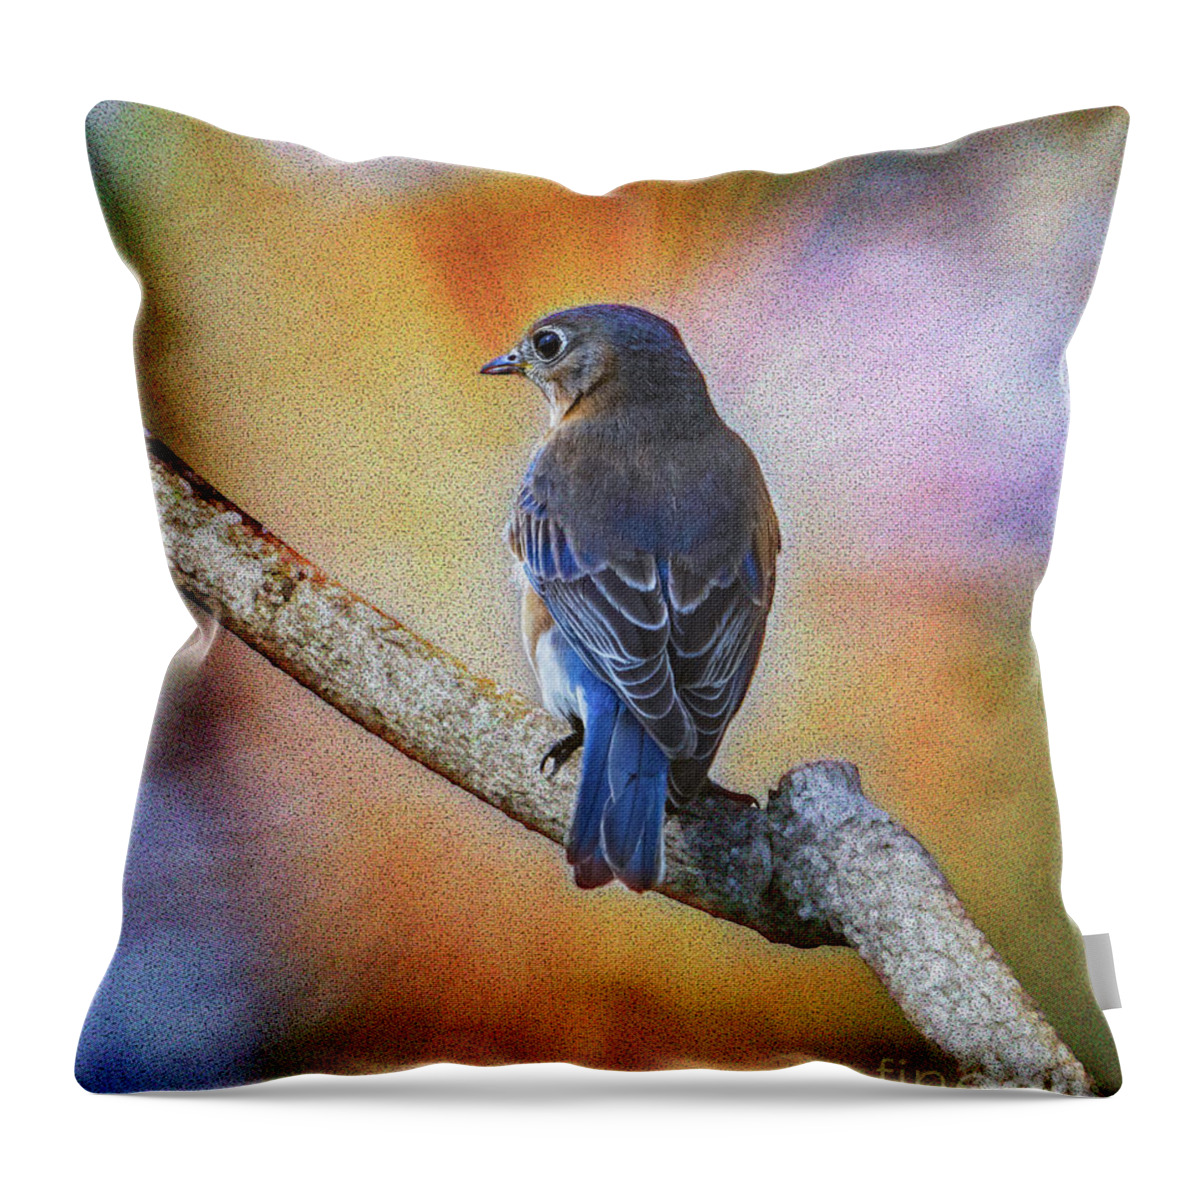 Bluebird Throw Pillow featuring the photograph Eastern Bluebird by Sandra Rust